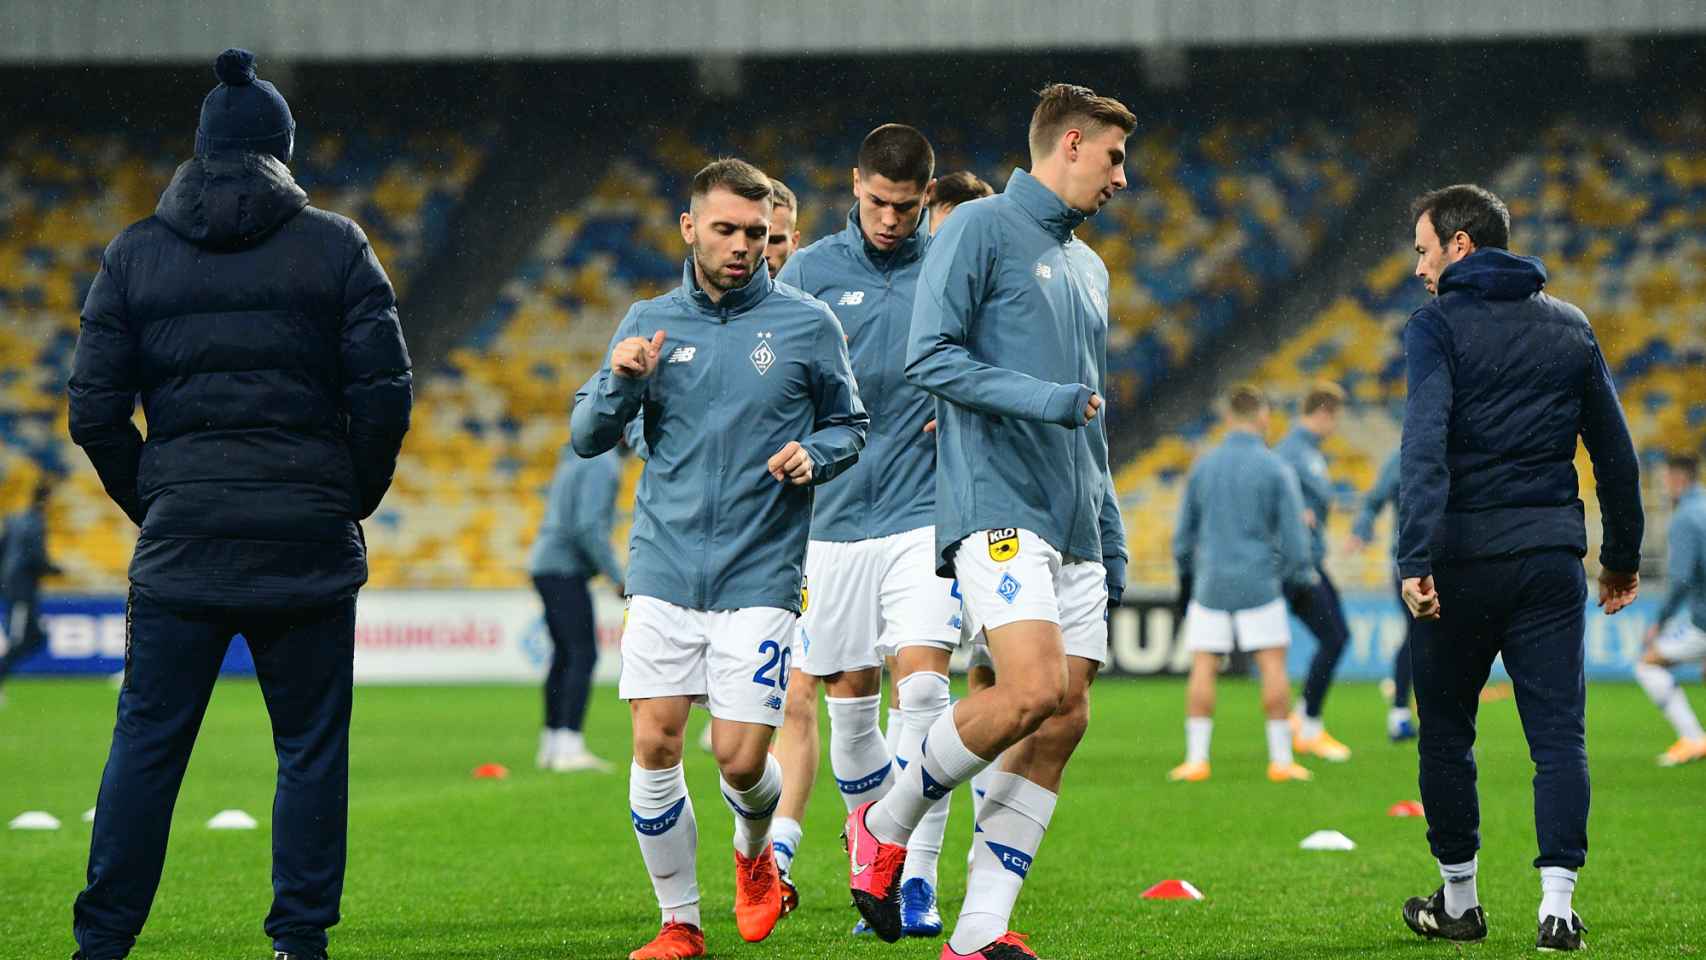 Calentamiento de los jugadores del Dinamo de Kiev